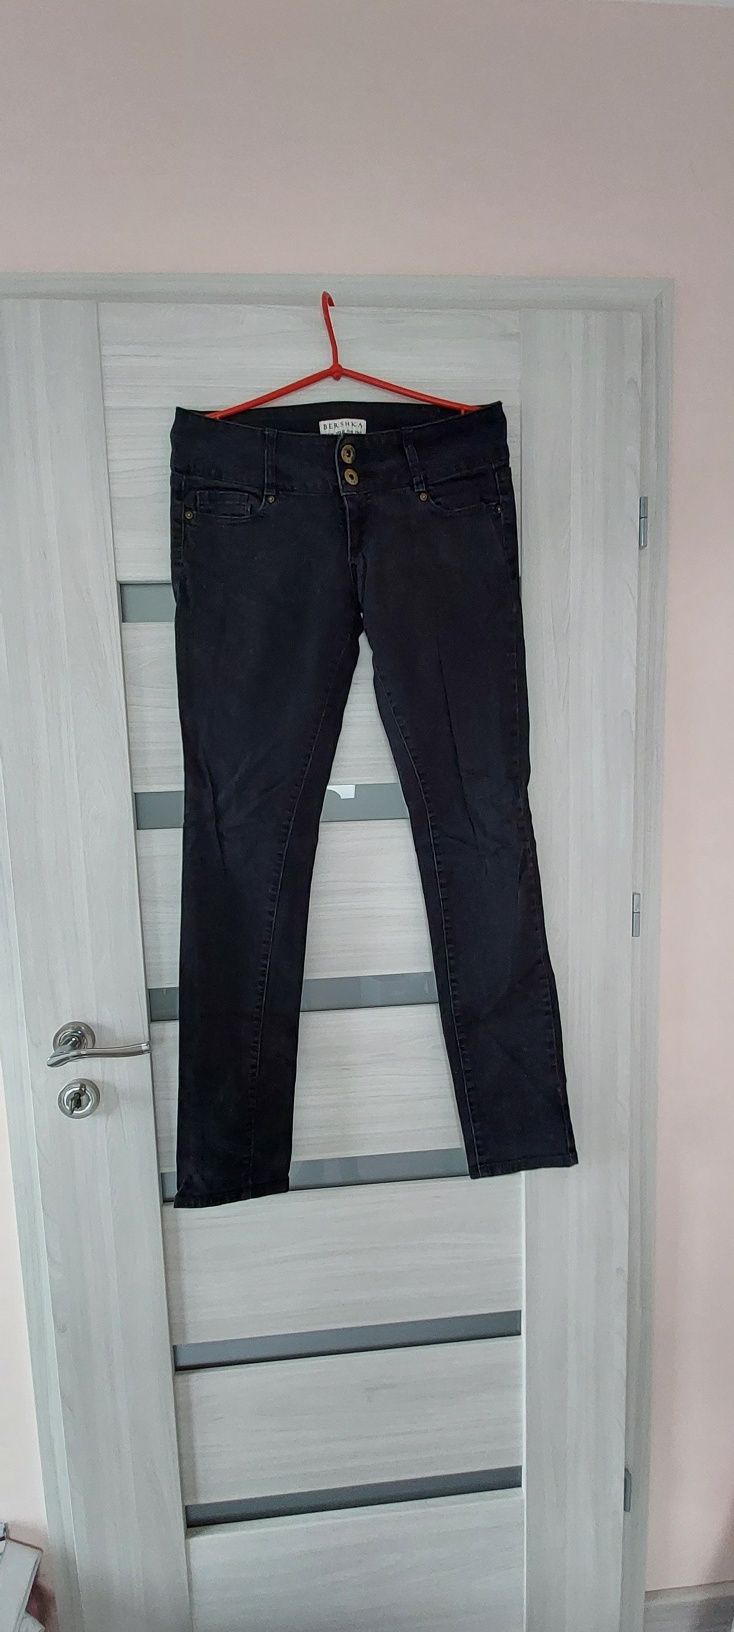 Spodnie rurki czarne jeansowe dżinsowe dziny bershka M L